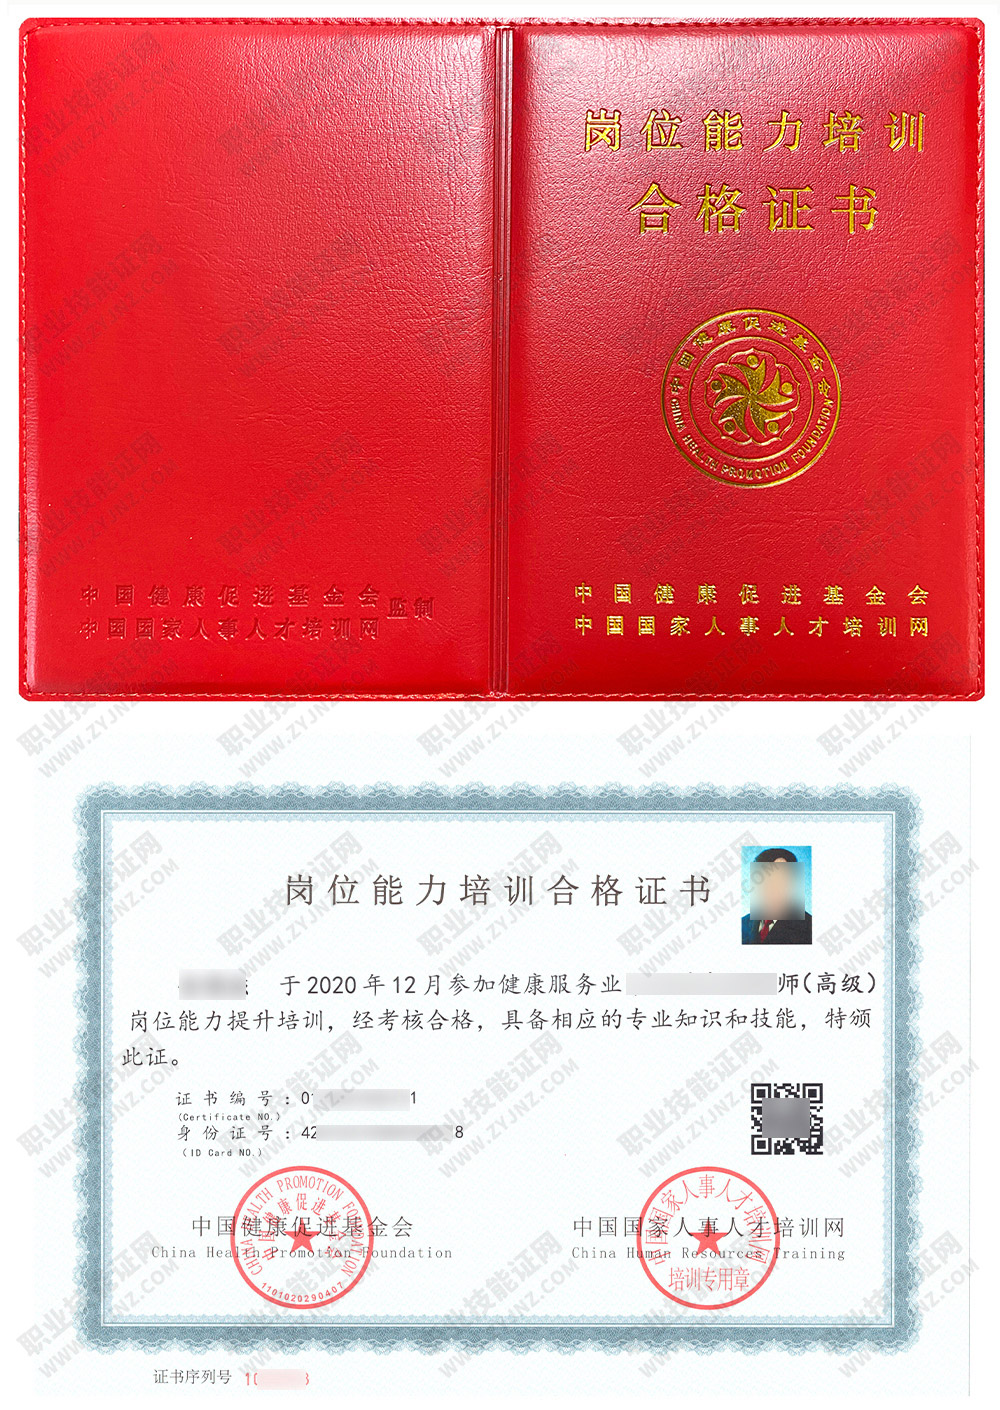 中国国家人事人才培训网 中医体质辨识与调理师 岗位能力培训合格证书